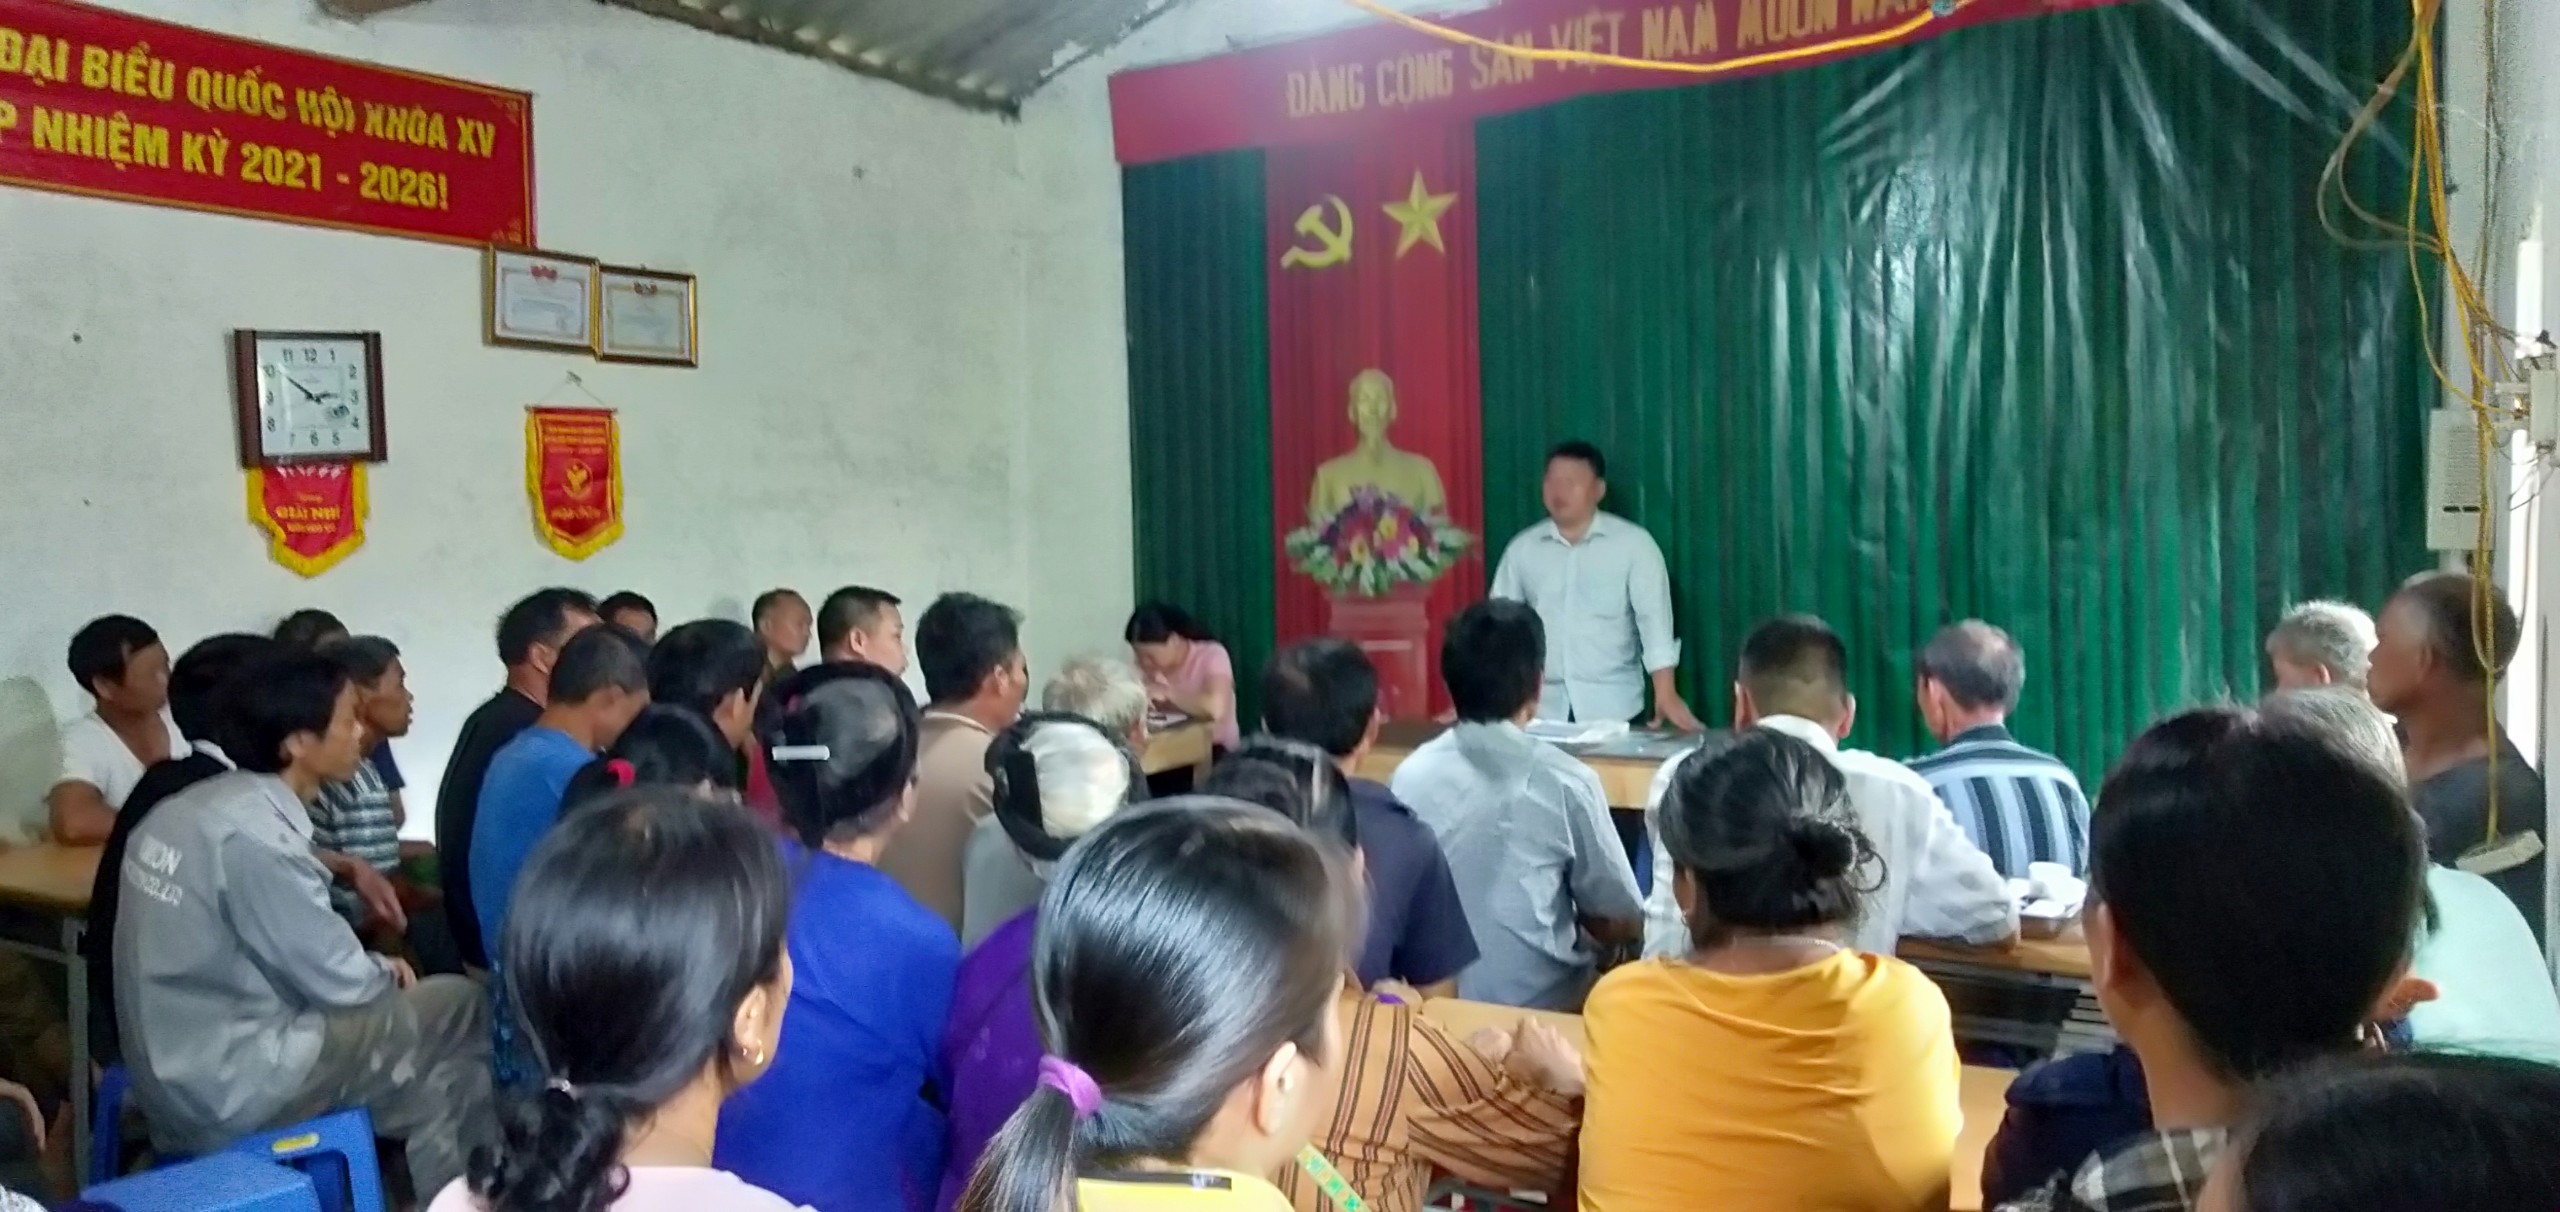 Ông Trần Quốc Chính – Bí thư Đảng ủy, Chủ tịch UBND xã phát biểu chỉ đạo.